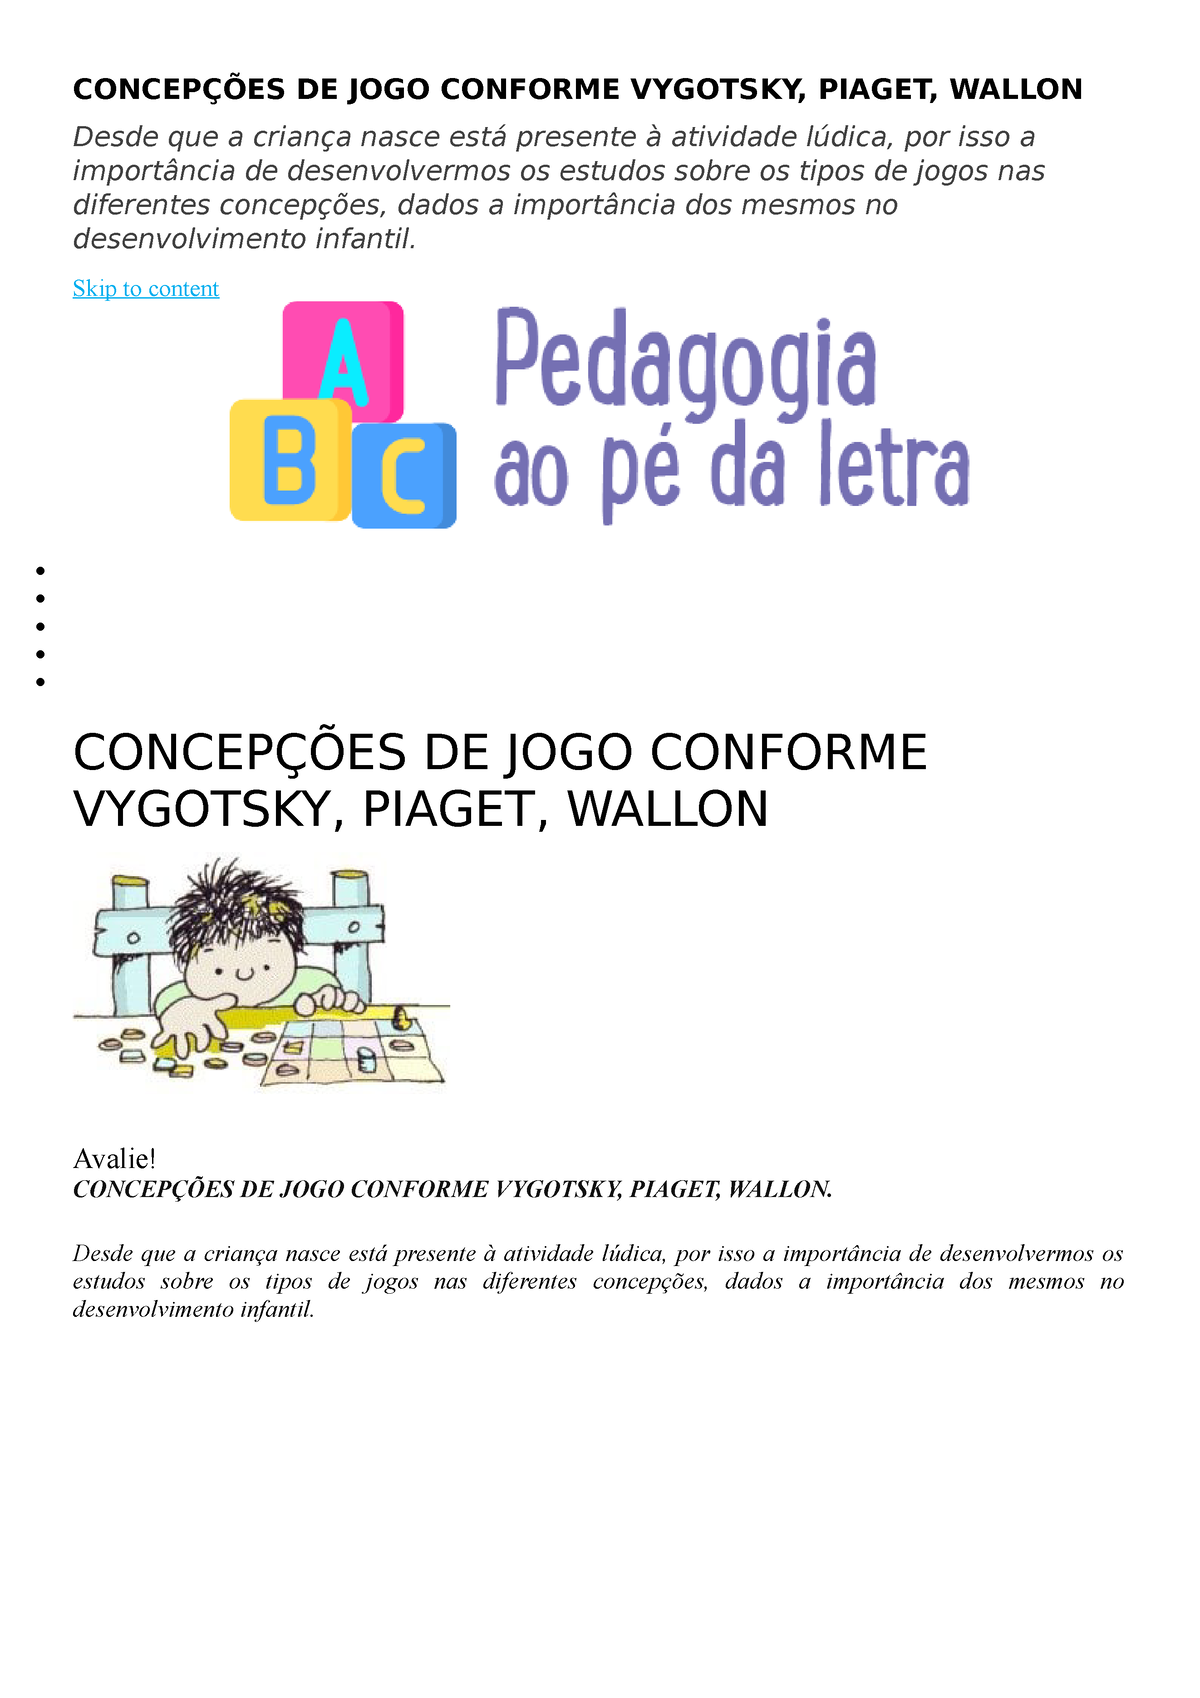 As concepções de jogos para Piaget, Wallon e Vygotski